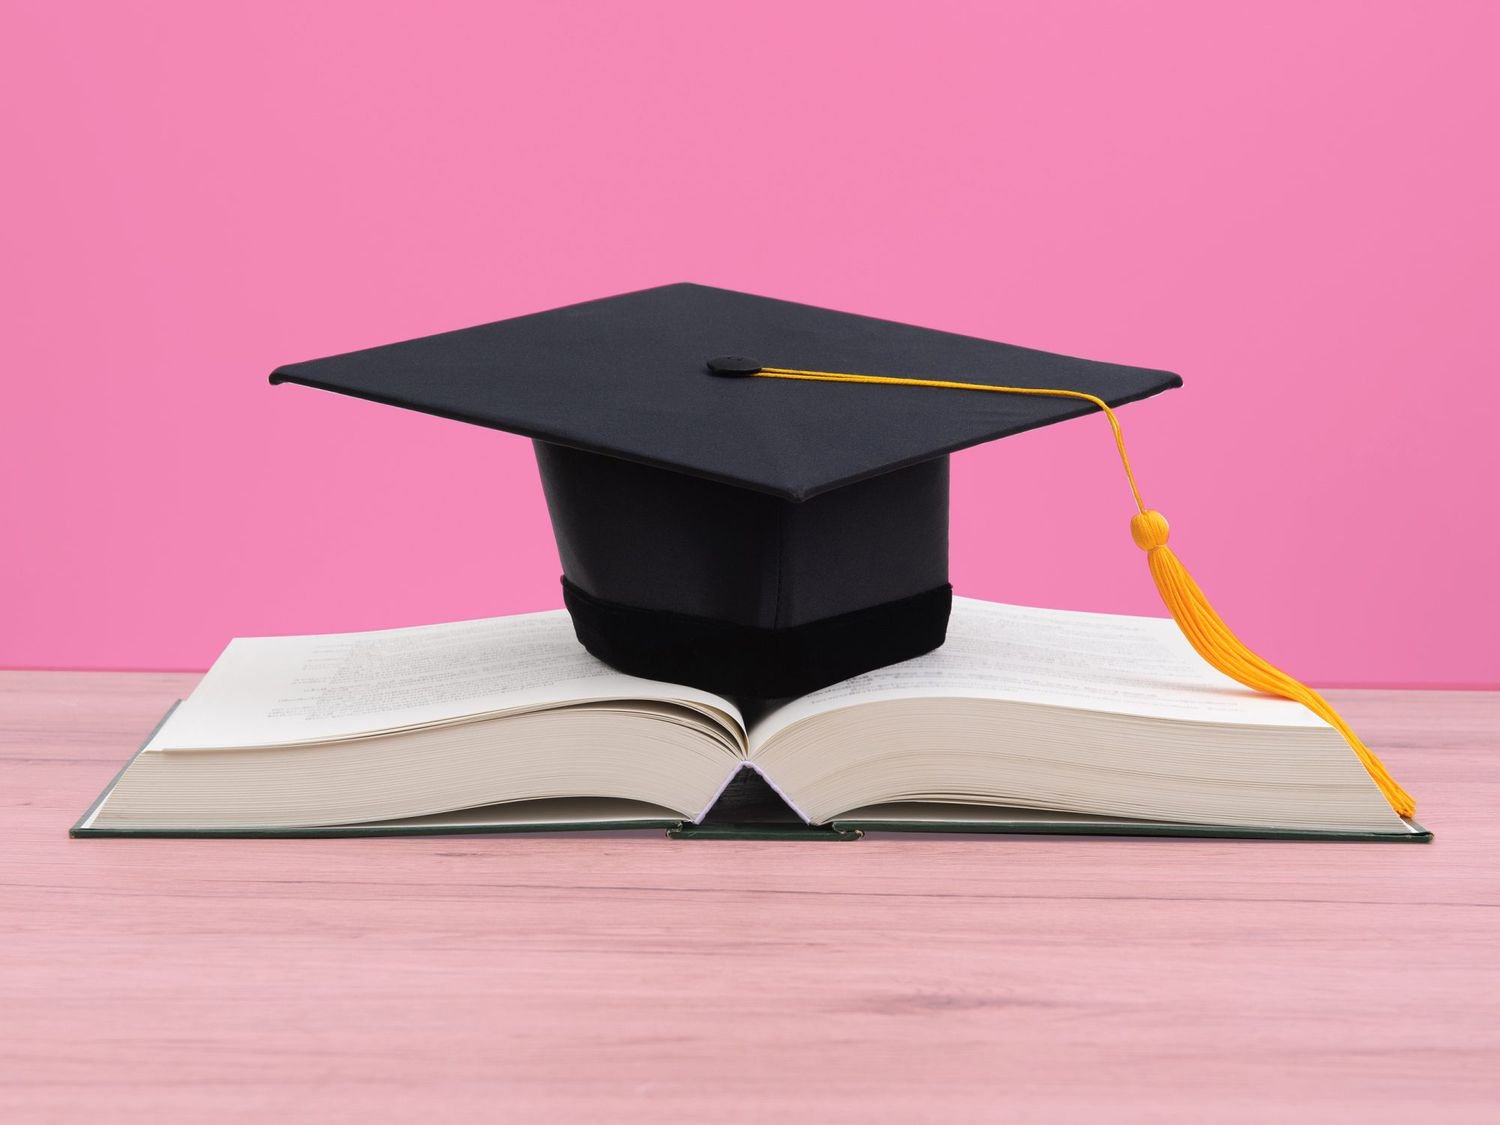 Tuyển sinh và đào tạo trình độ thạc sĩ bổ sung đợt 1 năm 2023 chuyên ngành: Ngôn ngữ Anh - Khóa 6